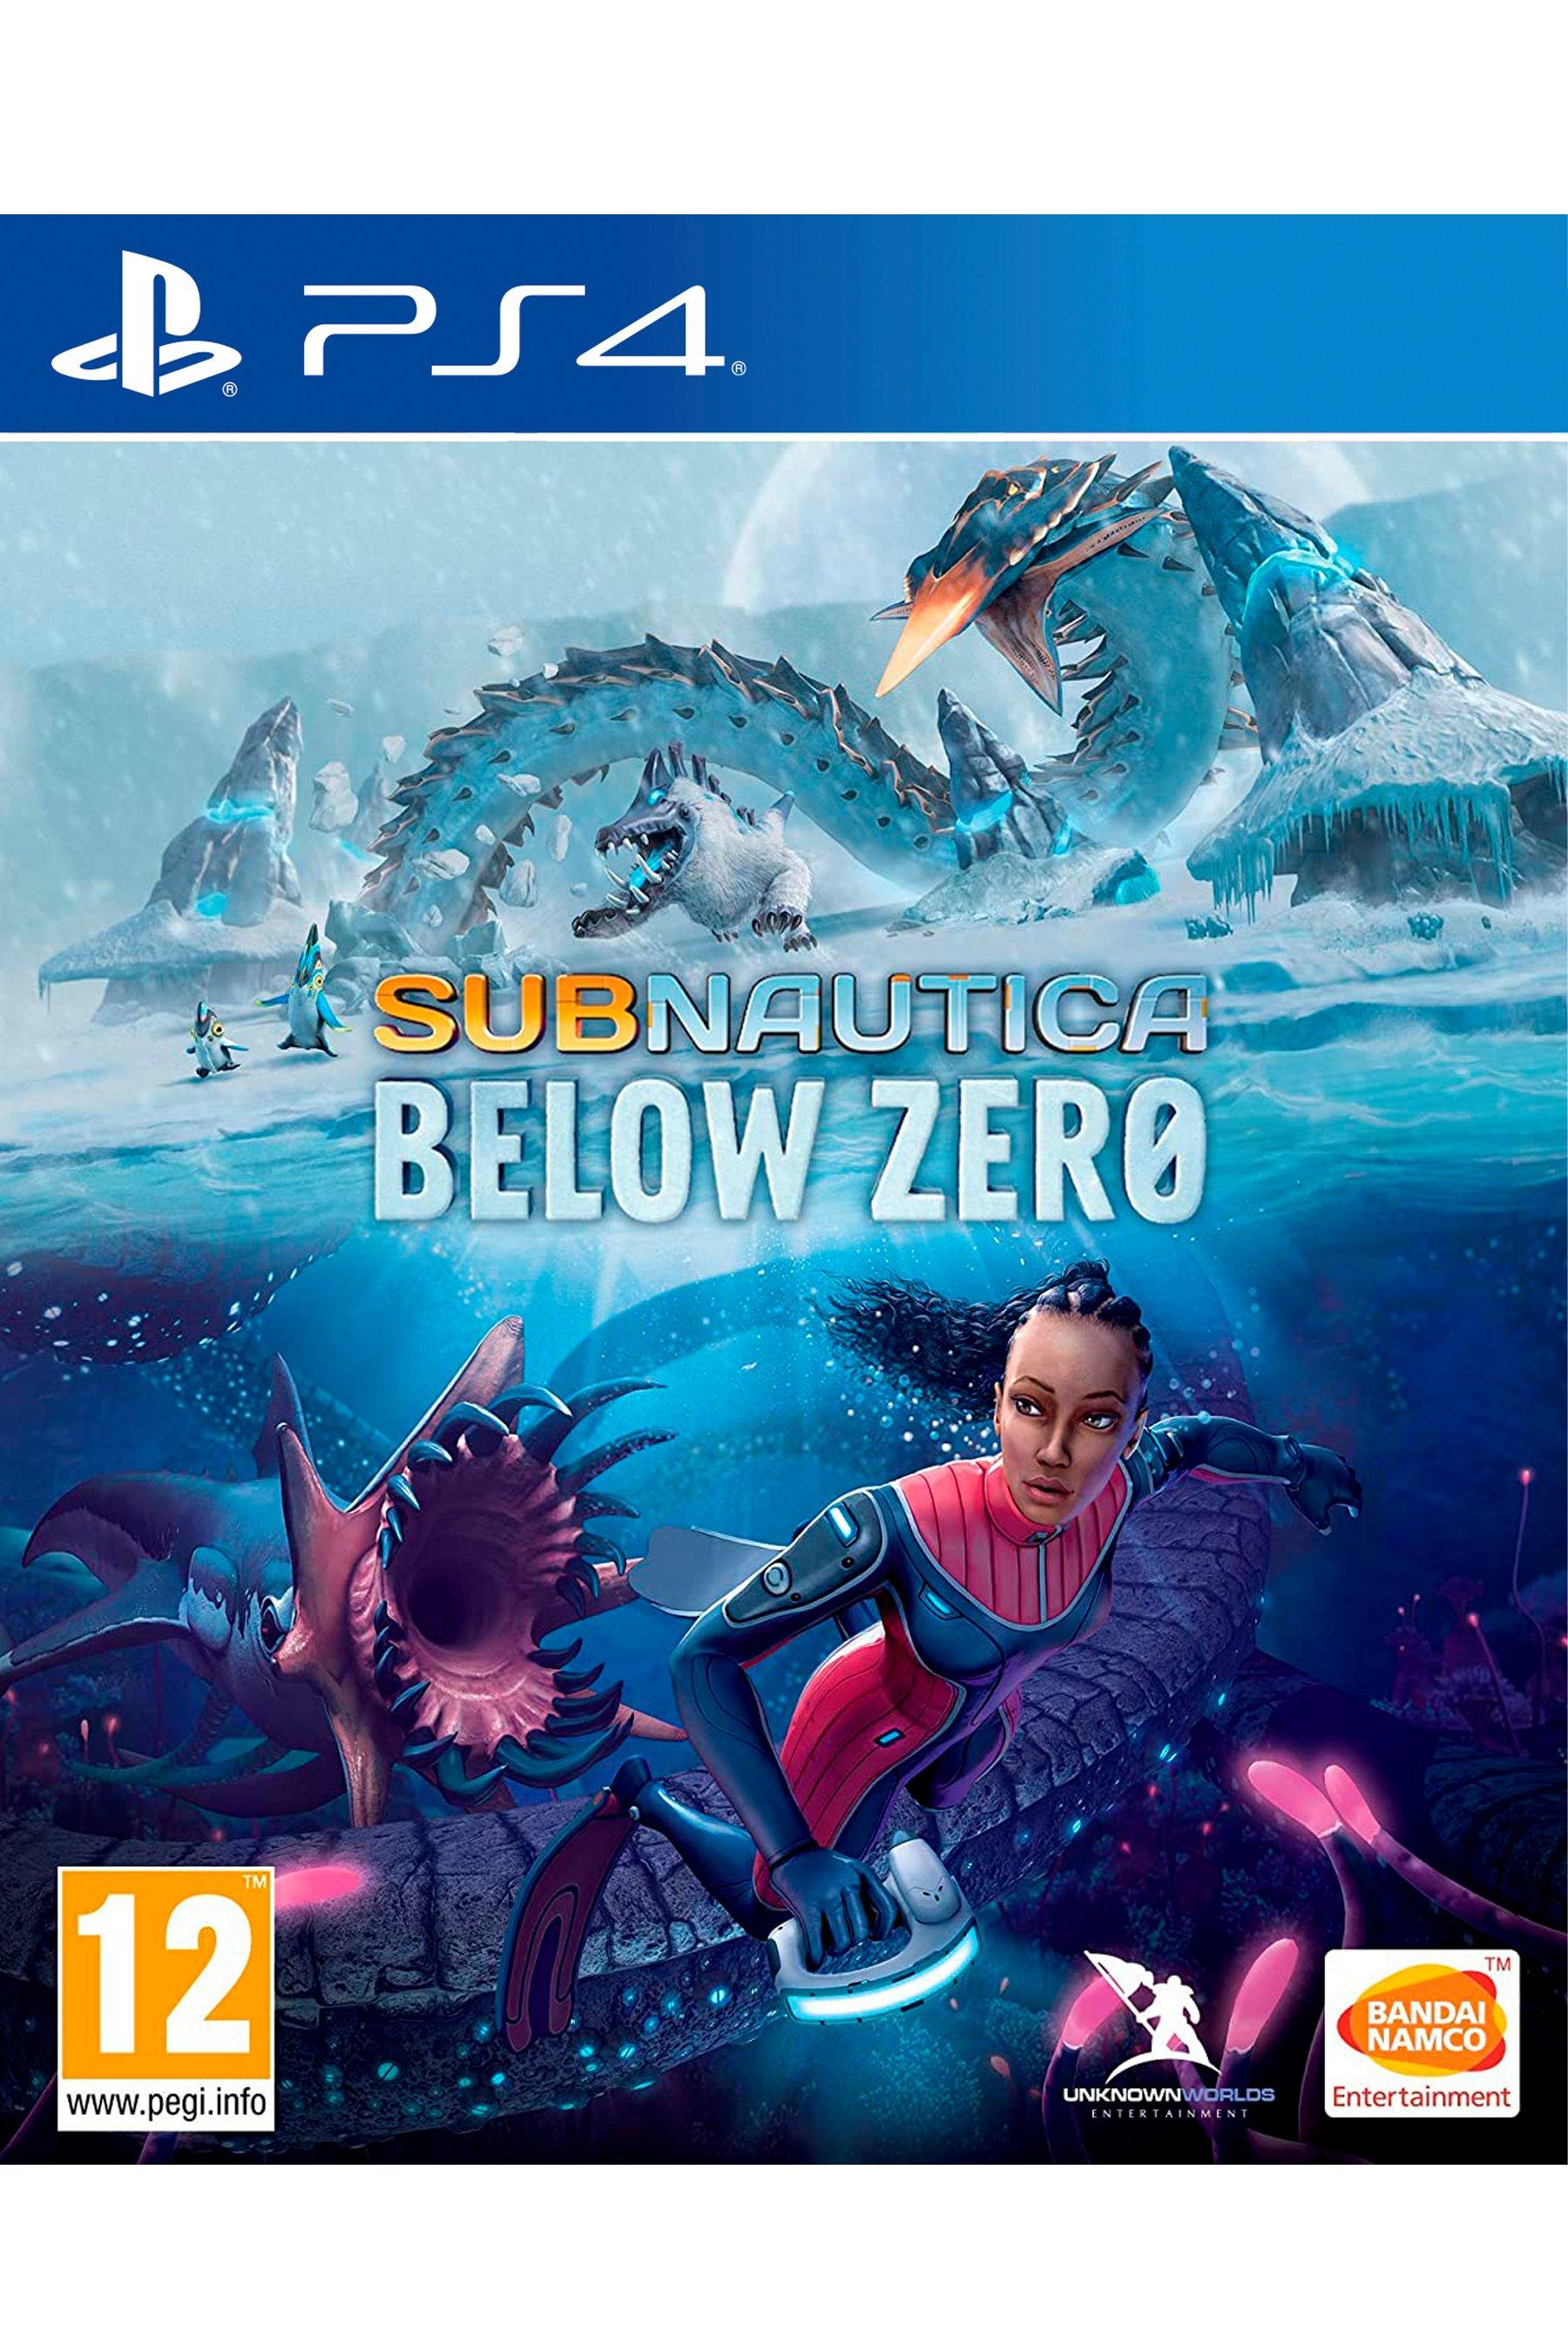 ps4: subnautica below zero